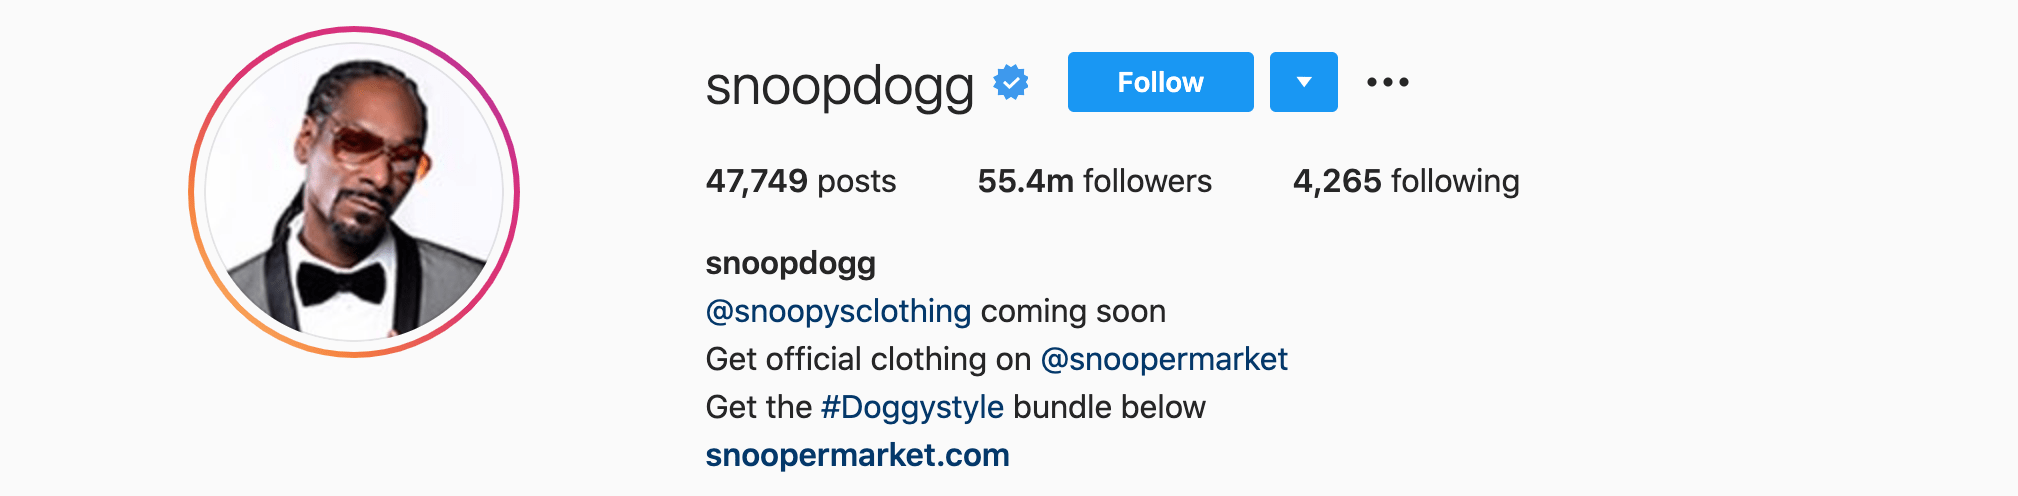 Top Instagram Influencers - SNOOP DOGG